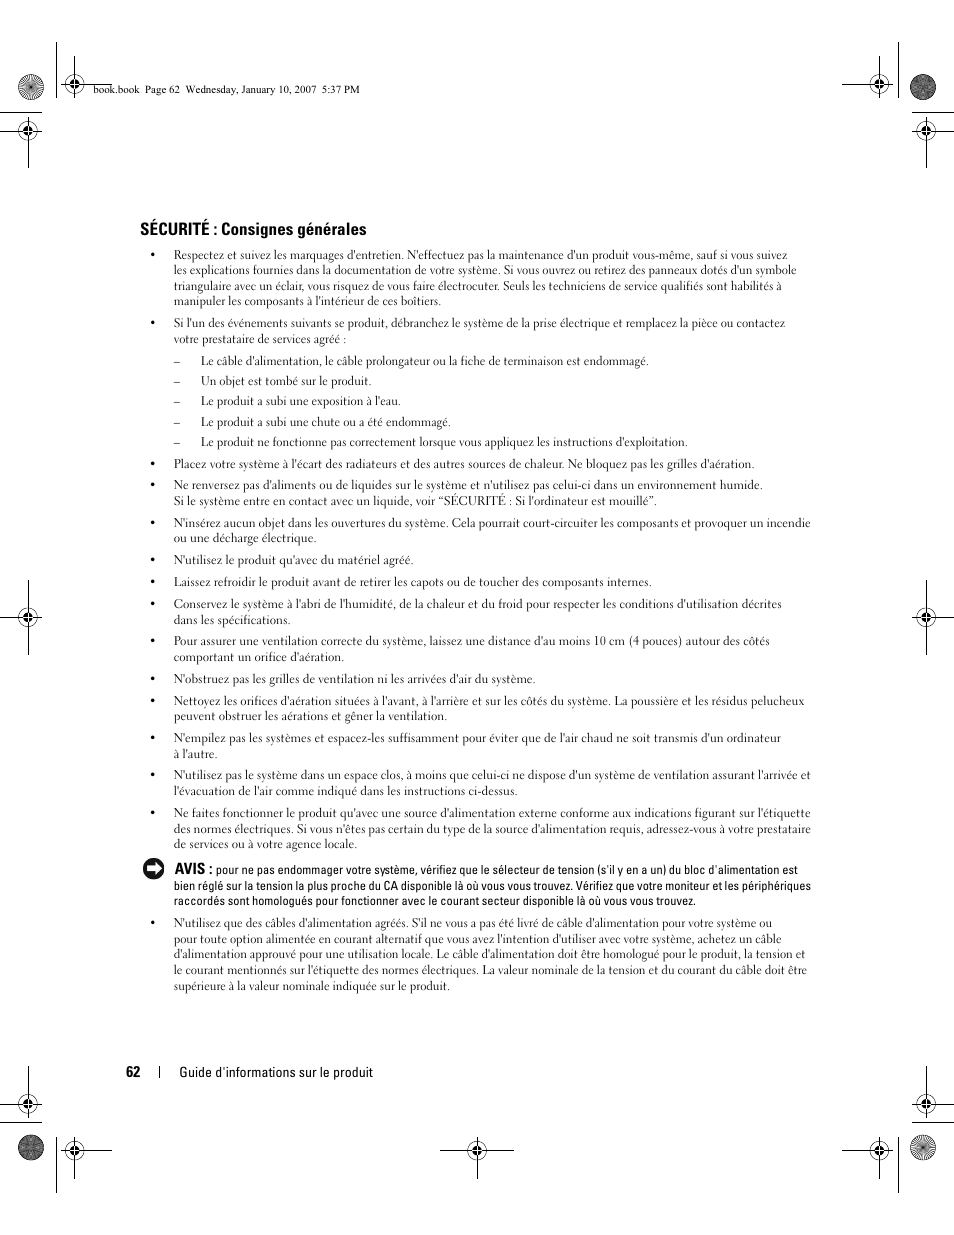 Sécurité : consignes générales | Dell ECX User Manual | Page 64 / 222